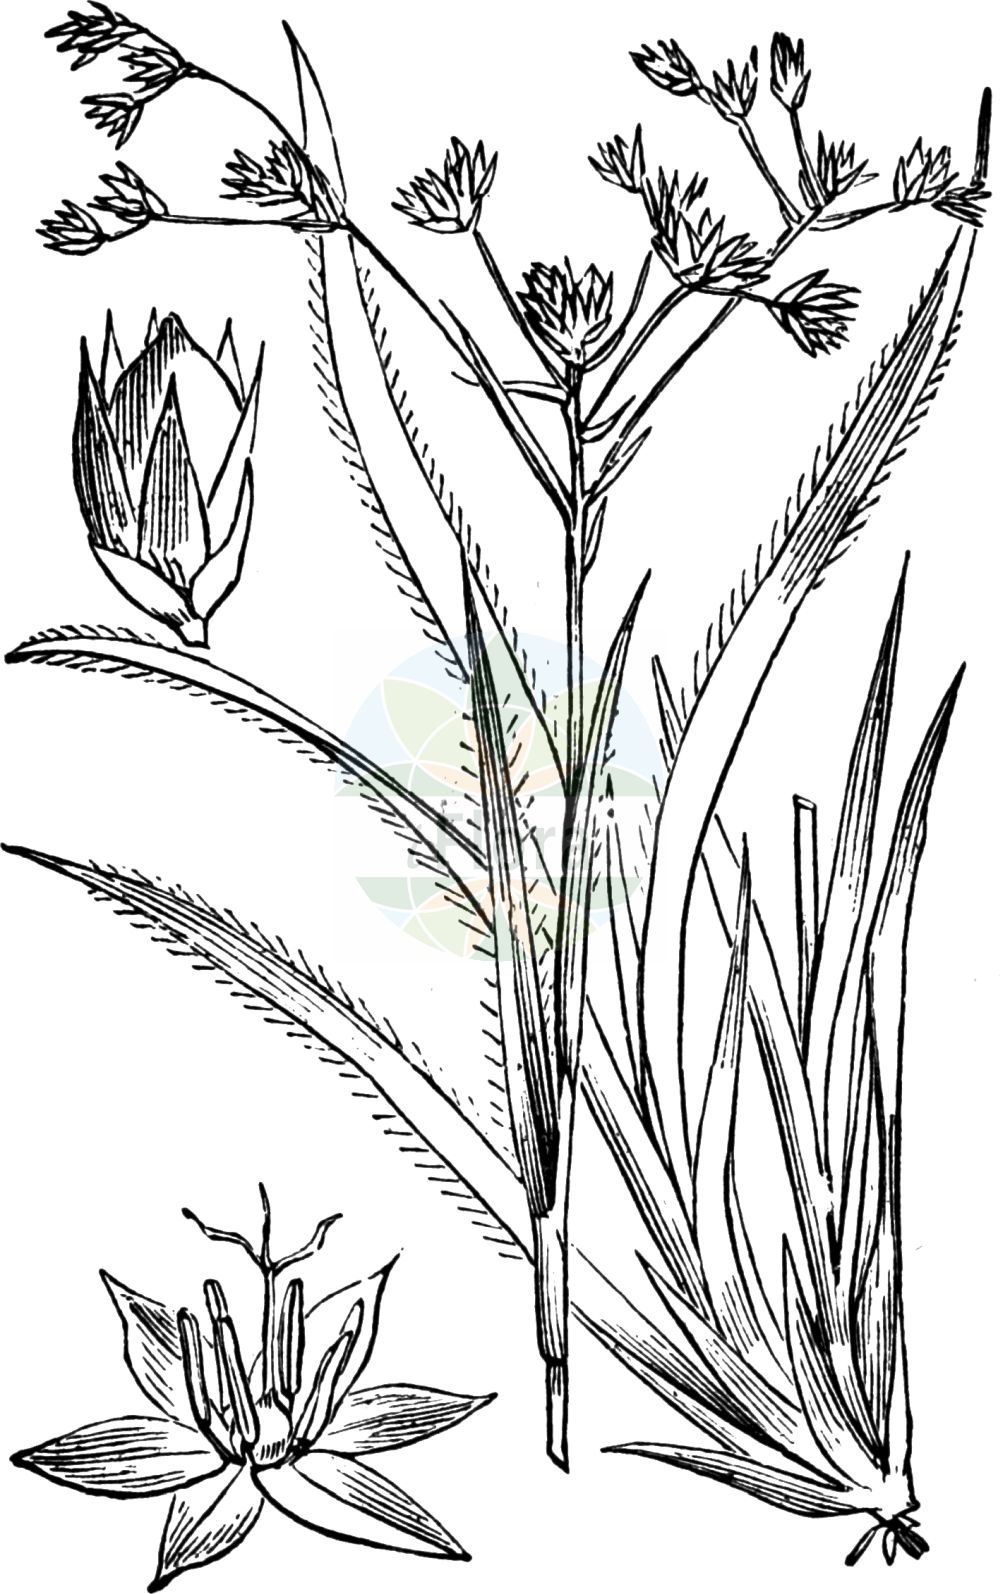 Historische Abbildung von Luzula sylvatica (Wald-Hainsimse - Great Wood-rush). Das Bild zeigt Blatt, Bluete, Frucht und Same. ---- Historical Drawing of Luzula sylvatica (Wald-Hainsimse - Great Wood-rush). The image is showing leaf, flower, fruit and seed.(Luzula sylvatica,Wald-Hainsimse,Great Wood-rush,Juncoides sylvatica,Luciola sylvatica,Luzula sylvatica,Wald-Hainsimse,Grosse Hainsimse,Great Wood-rush,Greater Woodrush,Shadowgrass,Luzula,Hainsimse,Wood-rush,Juncaceae,Binsengewächse,Rush family,Blatt,Bluete,Frucht,Same,leaf,flower,fruit,seed,Fitch et al. (1880))